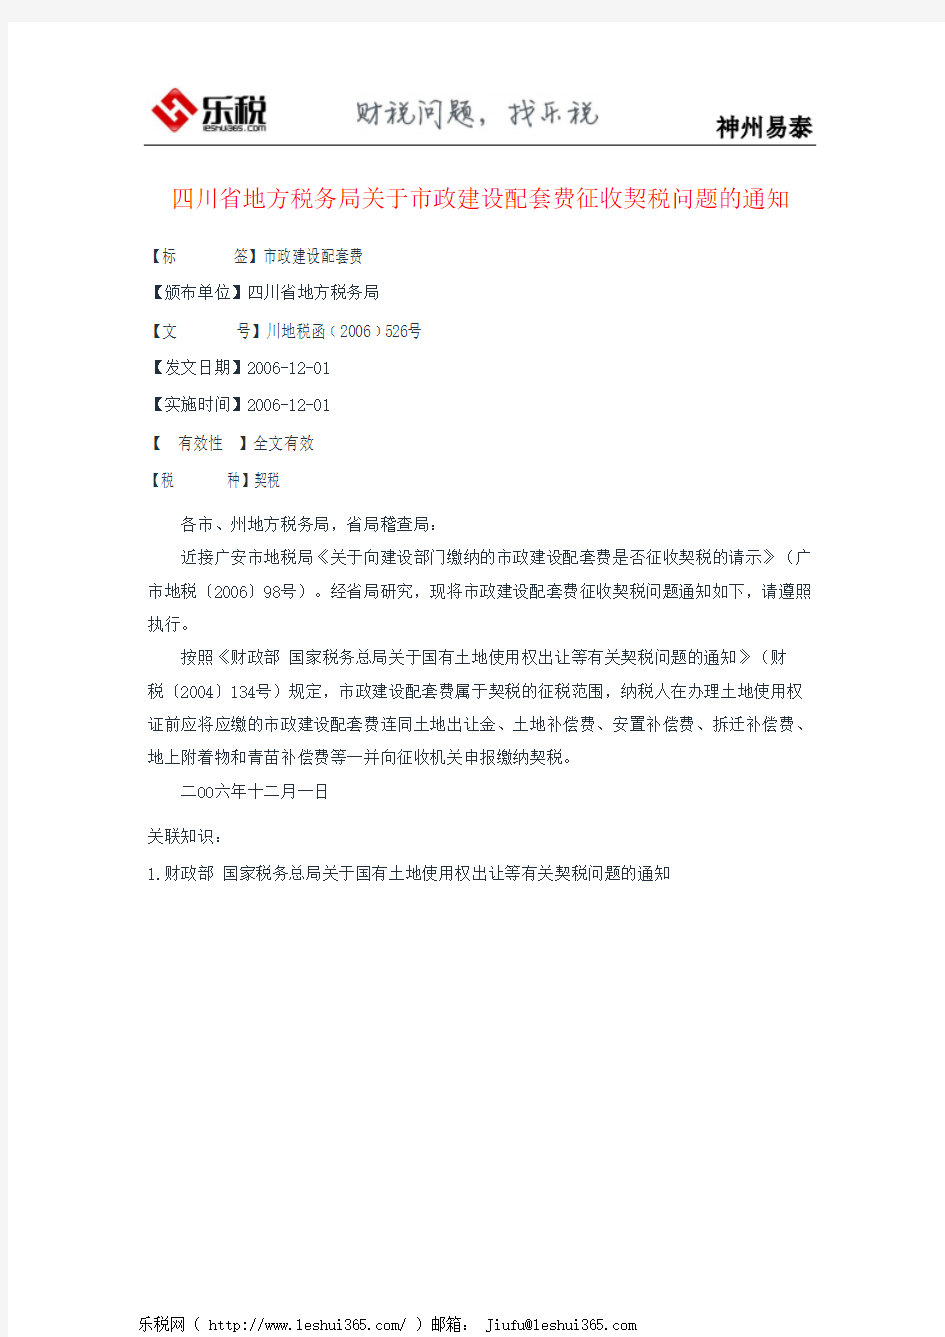 四川省地方税务局关于市政建设配套费征收契税问题的通知